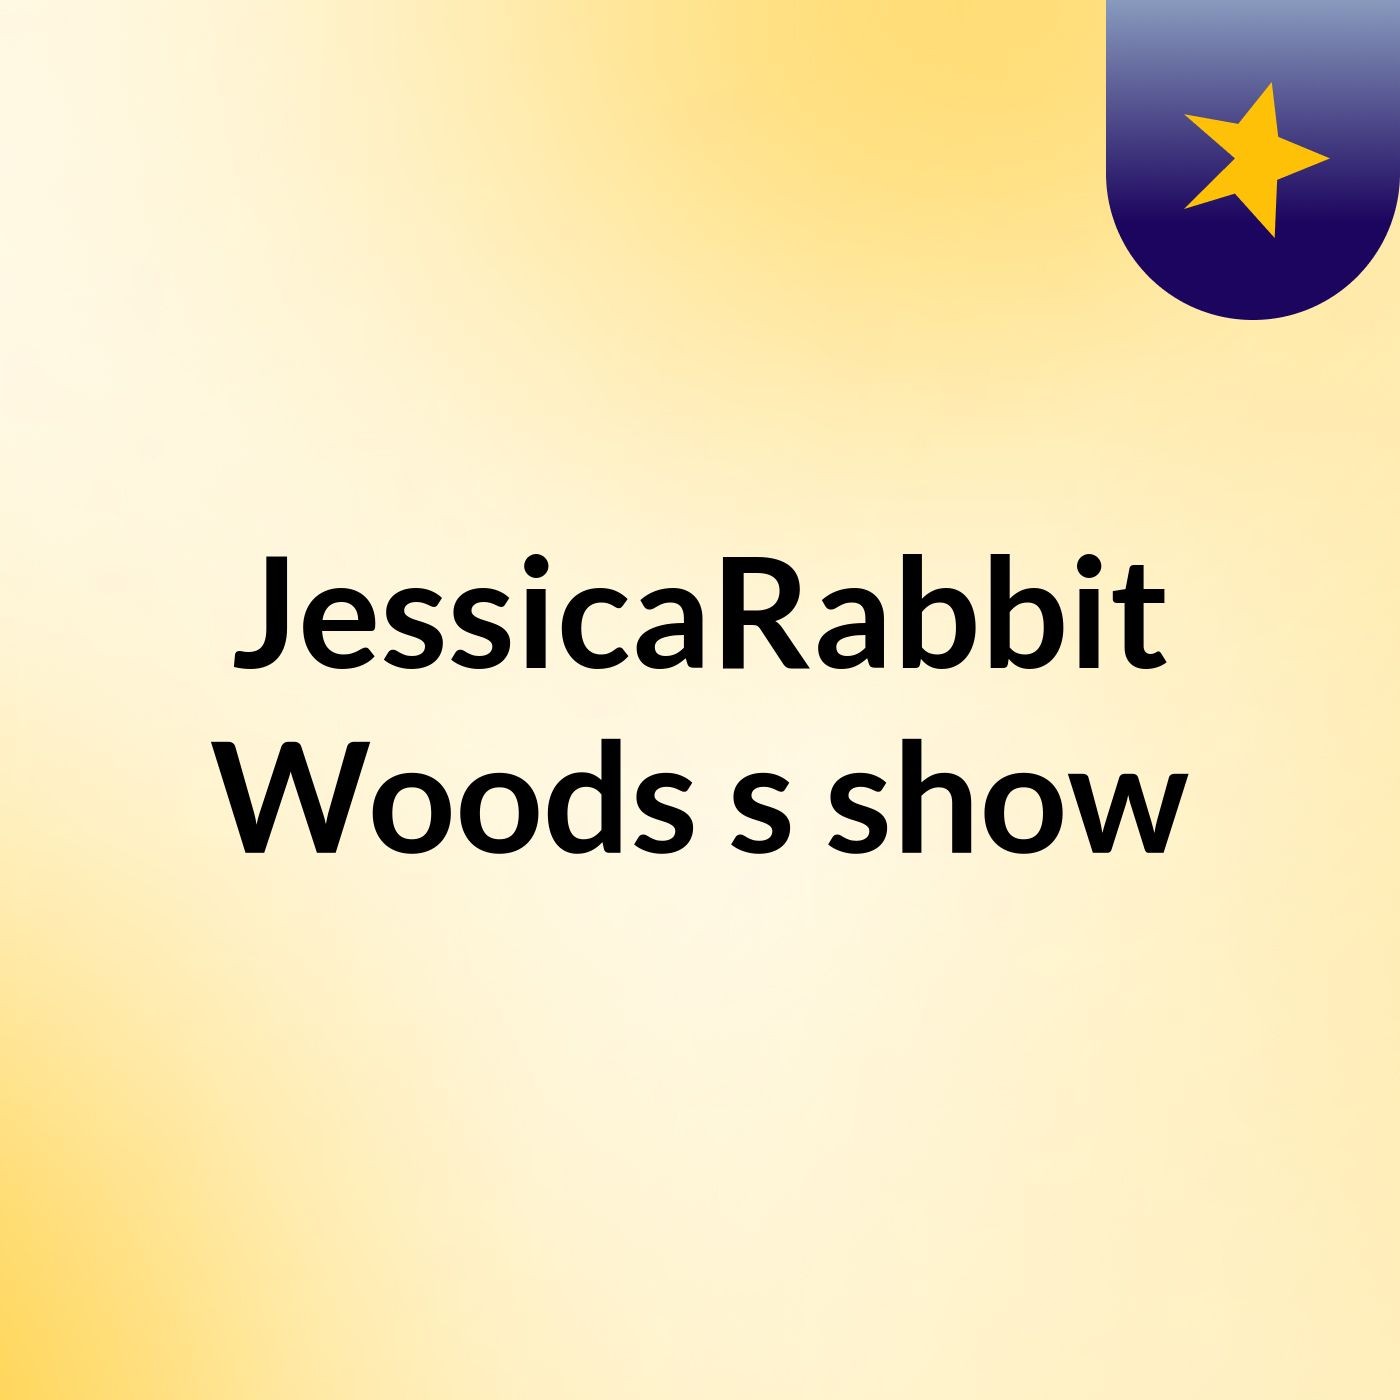 Episode 2 - JessicaRabbit Woods's show